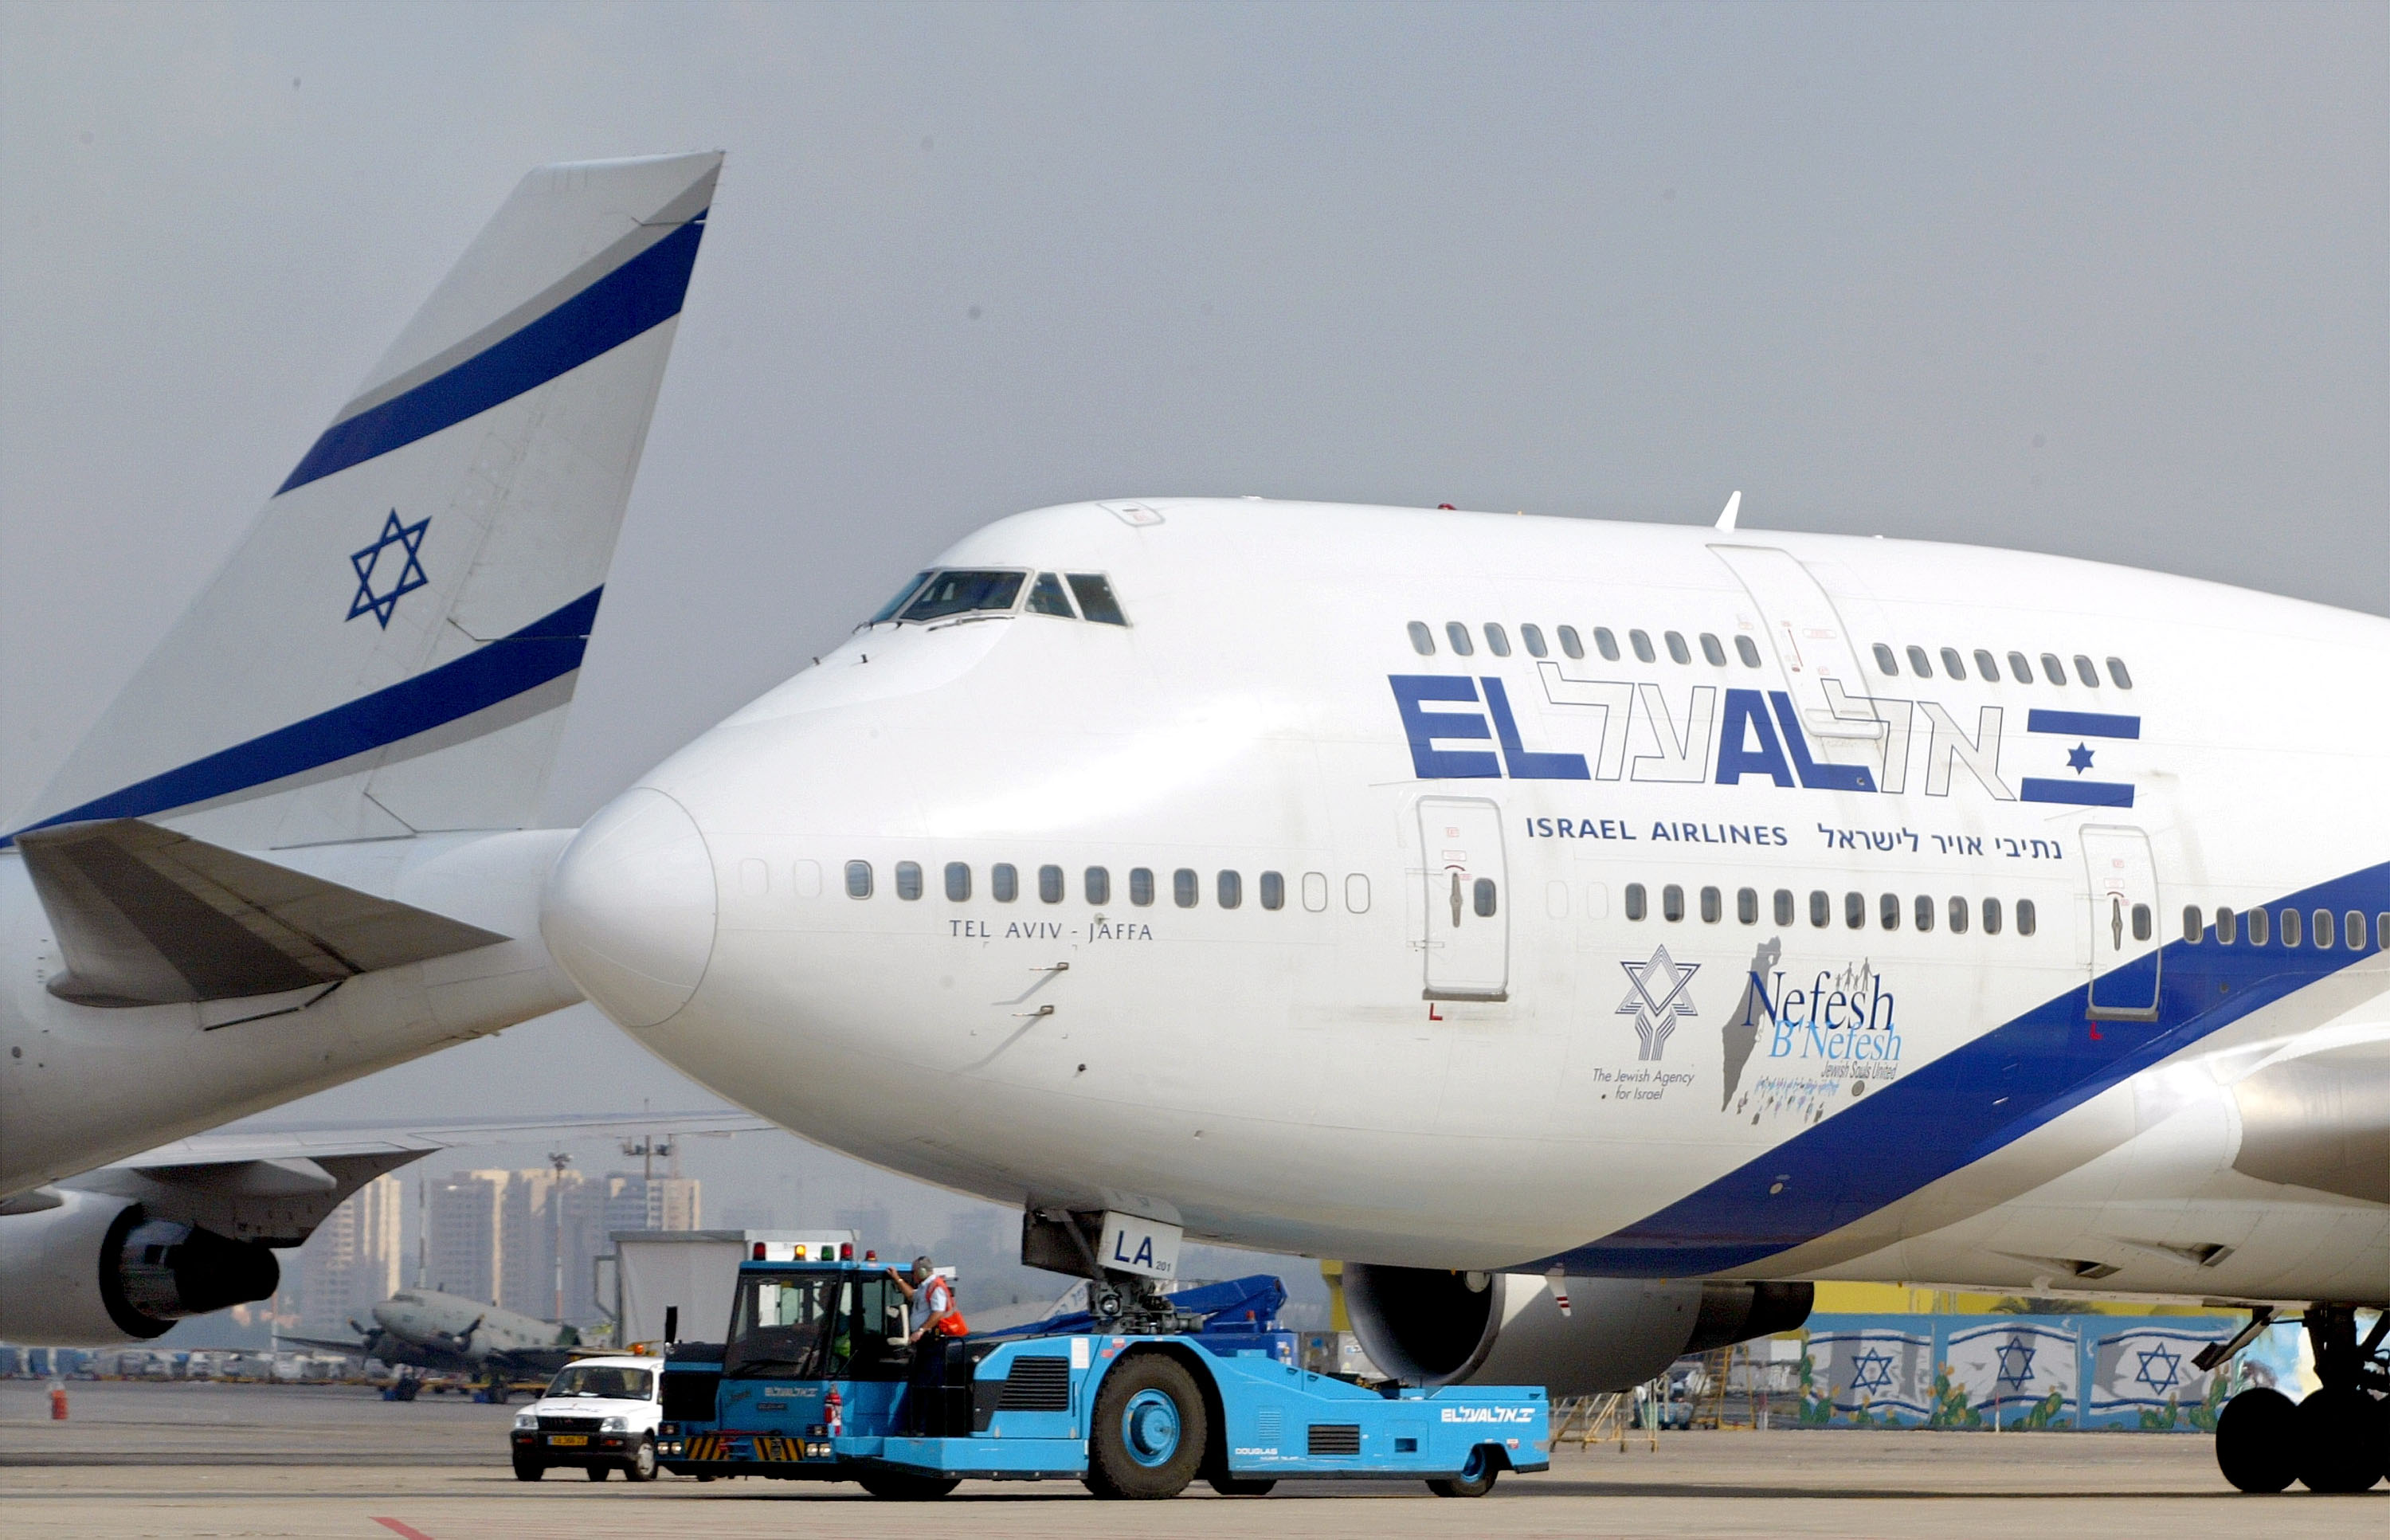 Рейс эль аль. Авиакомпания Израиля Эль Аль. Боинг 747 авиакомпании Israel. El al Israel Airlines внутри. El al Israel Airlines салон.